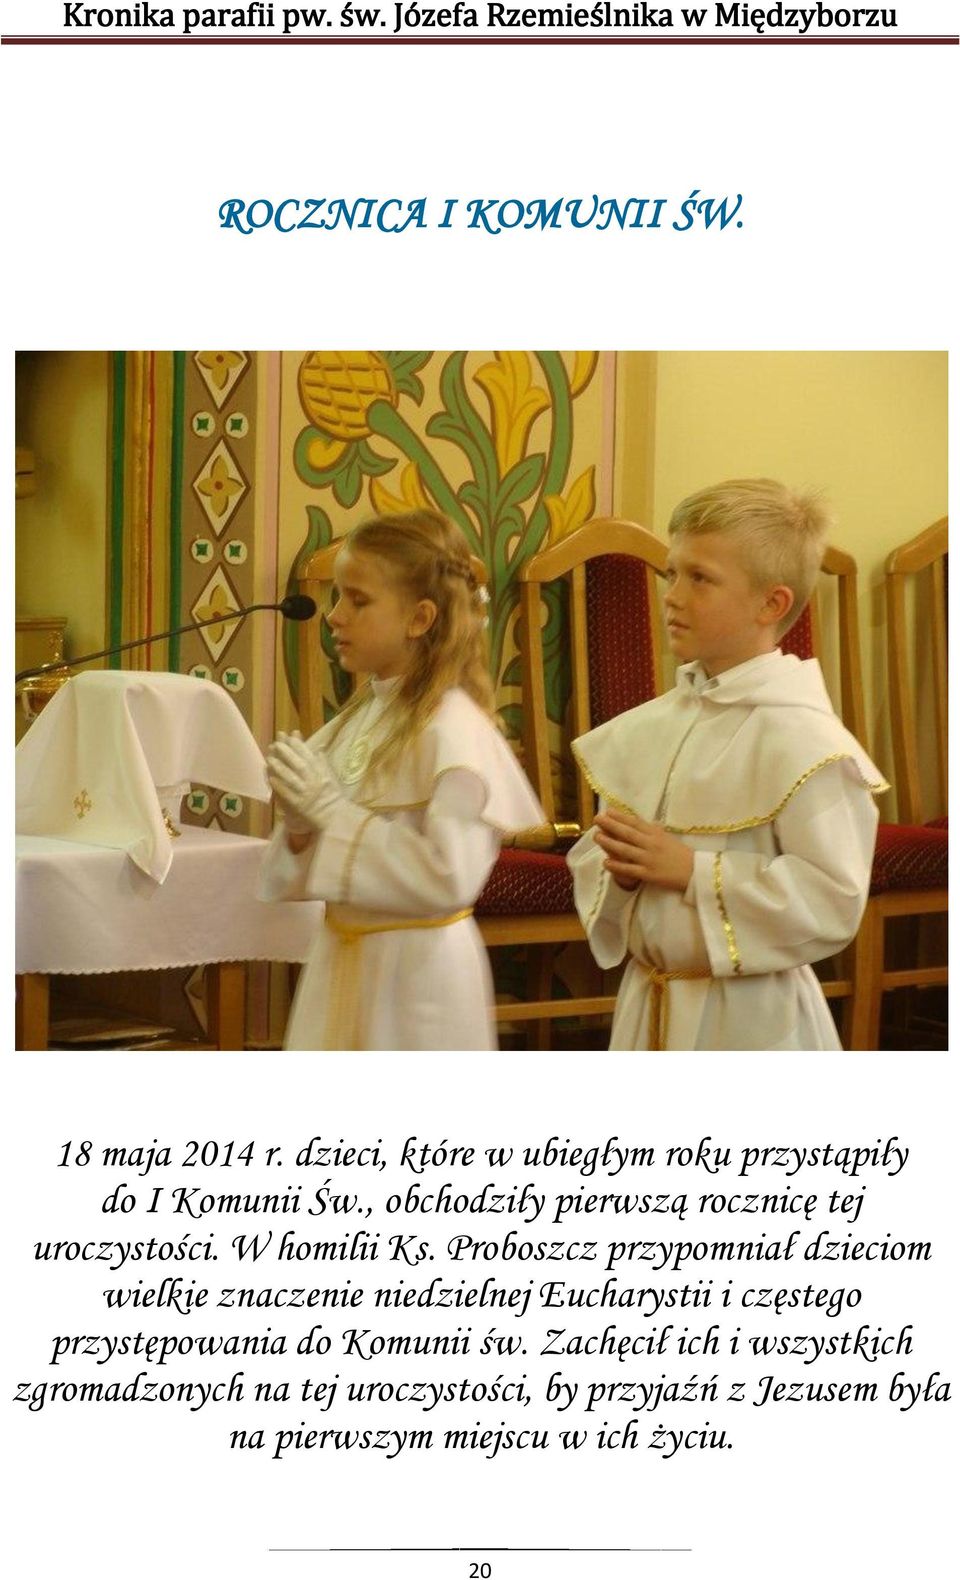 Proboszcz przypomniał dzieciom wielkie znaczenie niedzielnej Eucharystii i częstego przystępowania